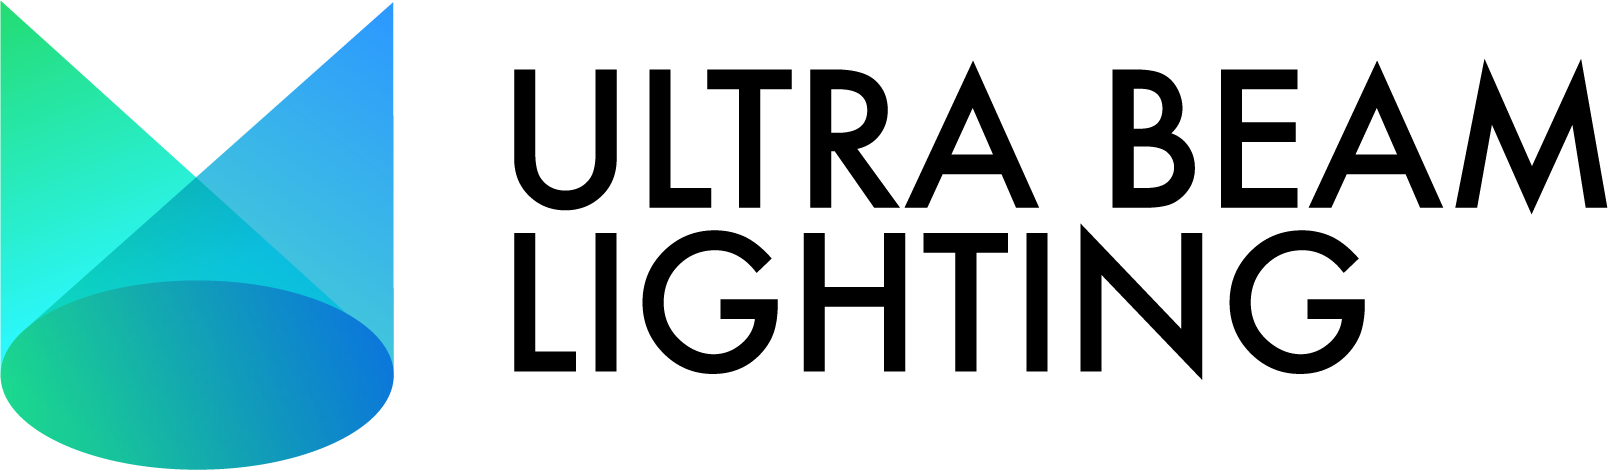 Ultra Beam Lighting Main logo